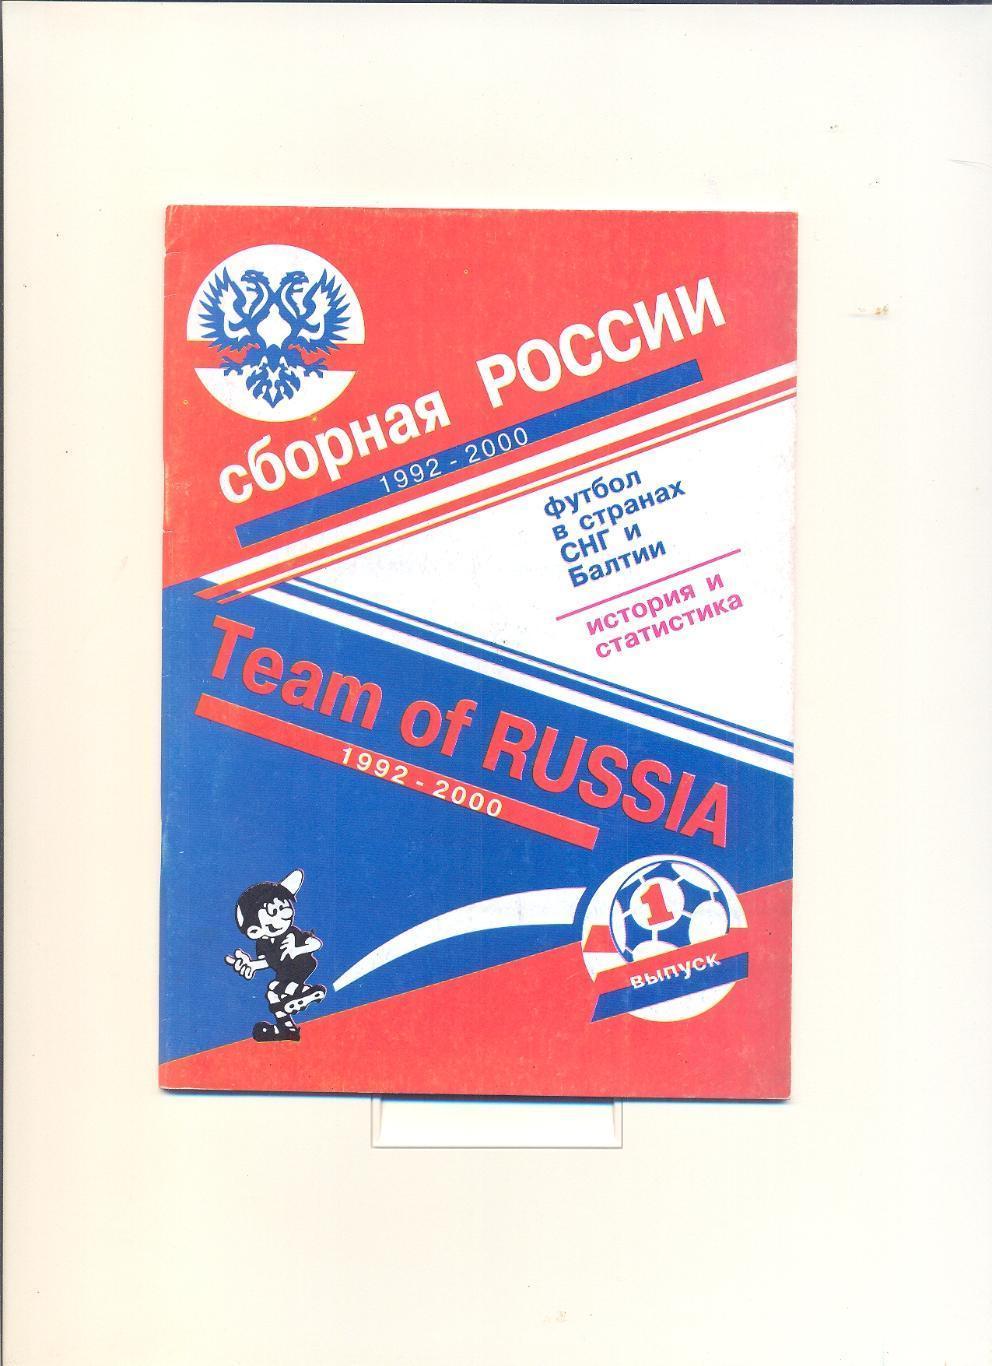 Сборная России по футболу 1992-2000